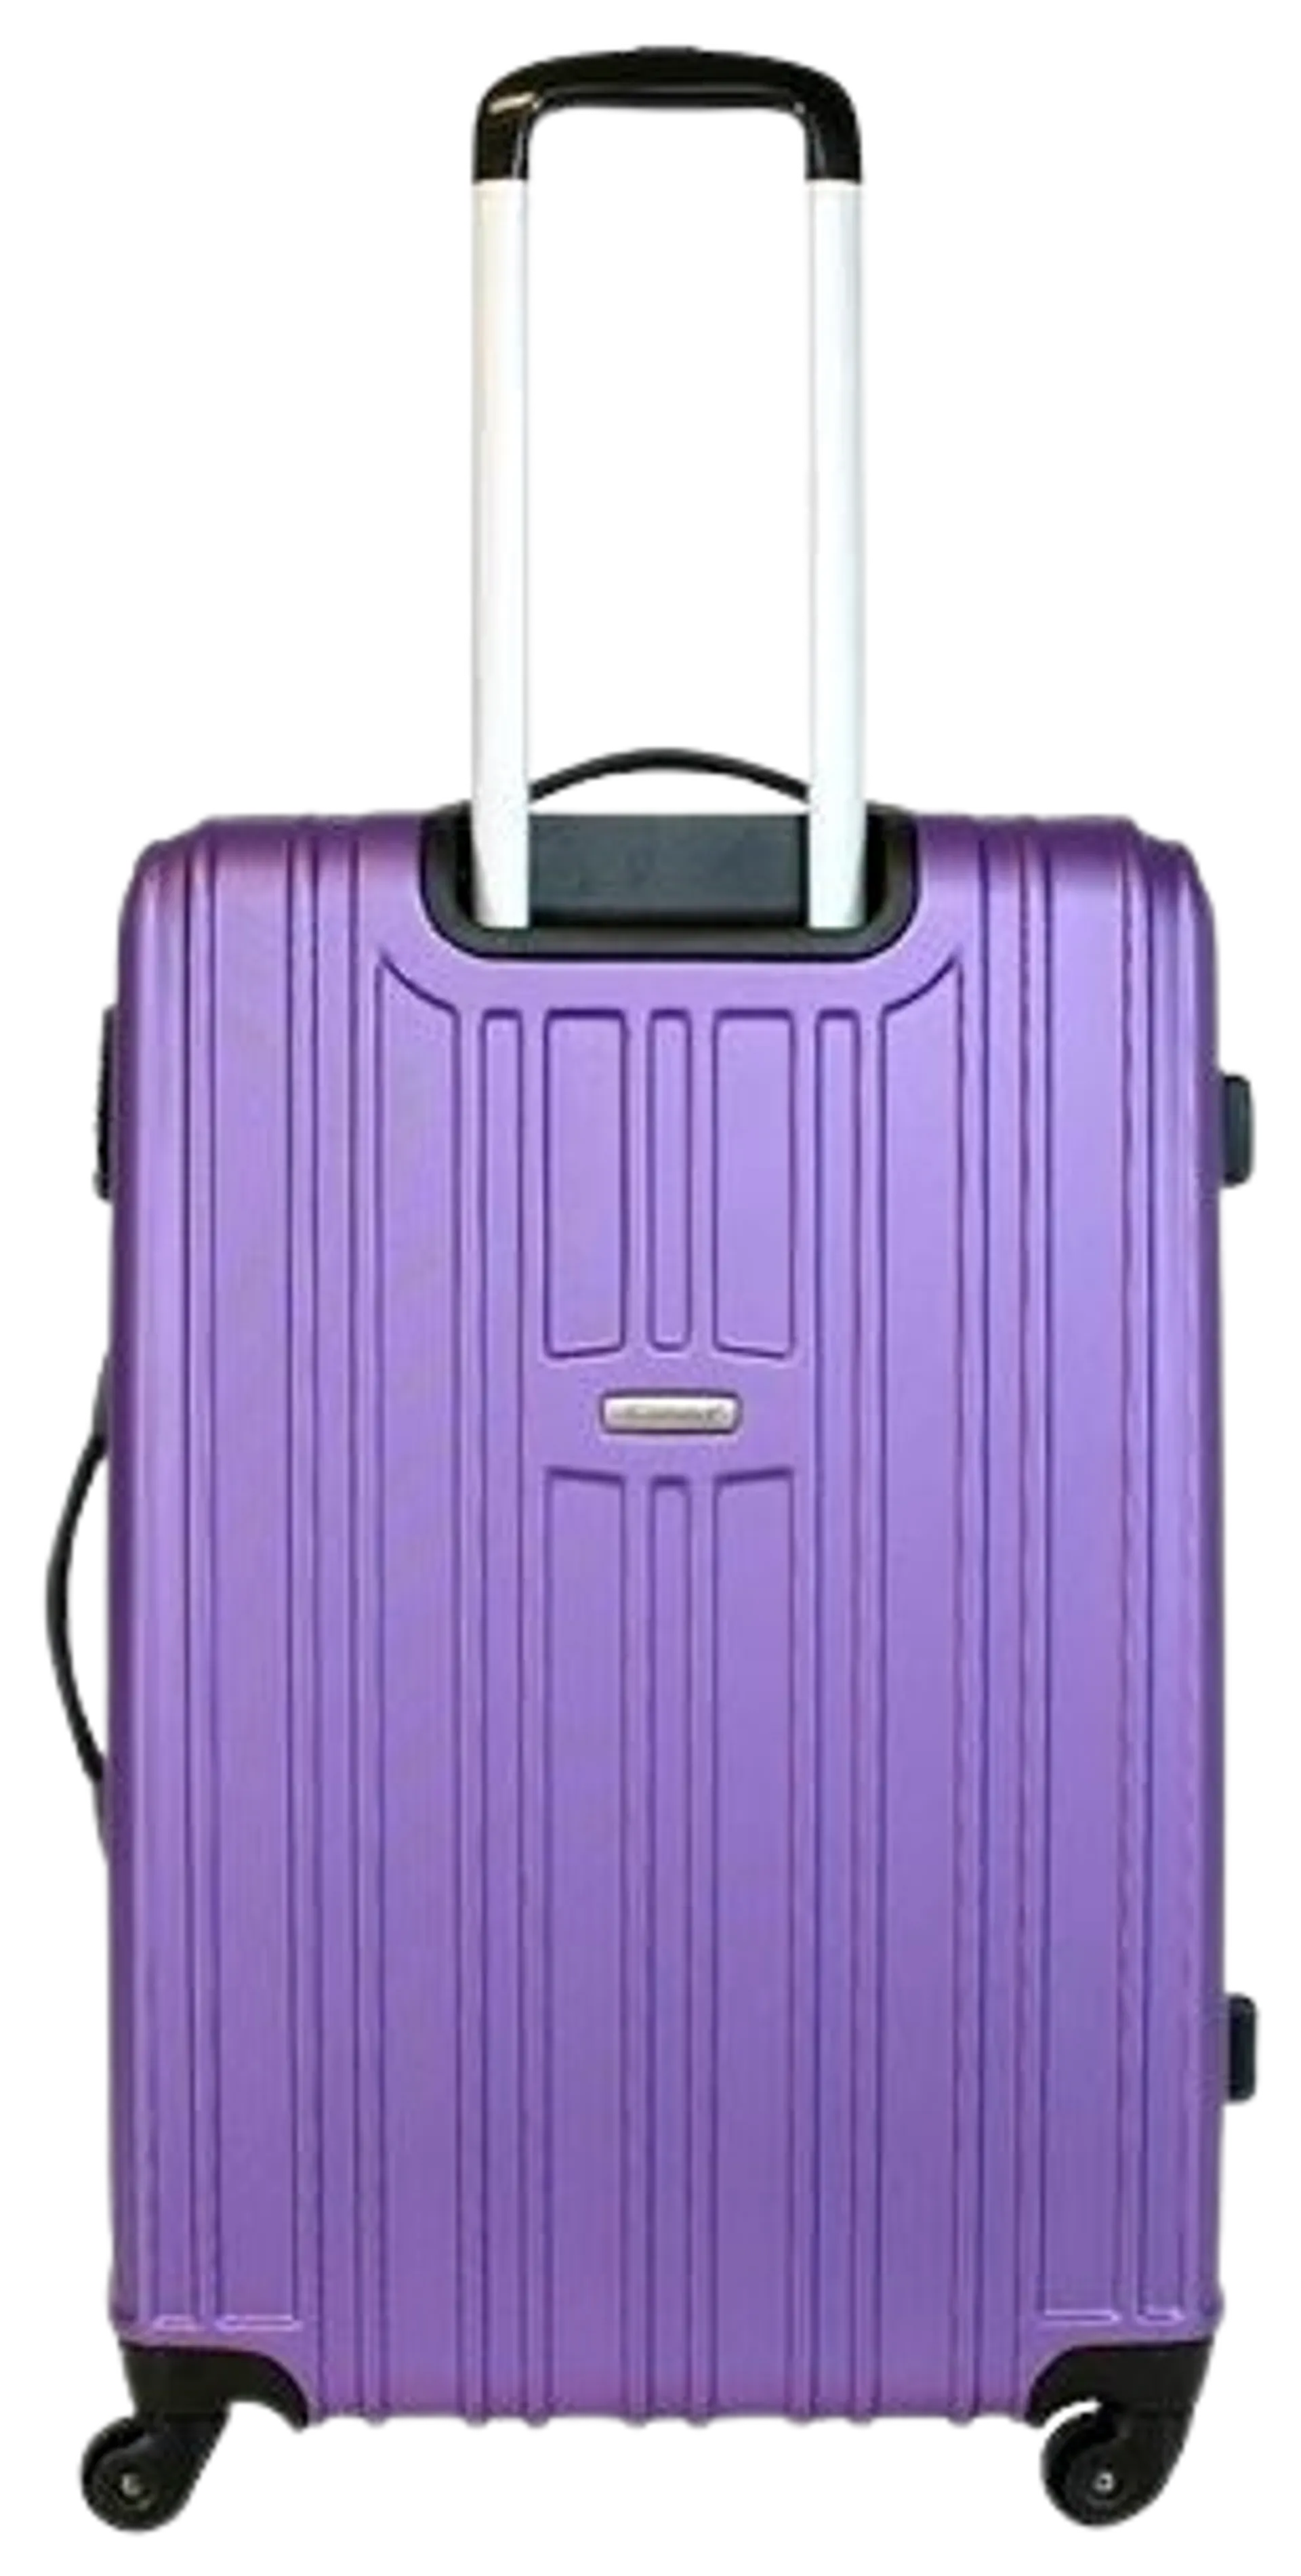 Cavalet Malibu matkalaukku L 73 cm, lila - 2